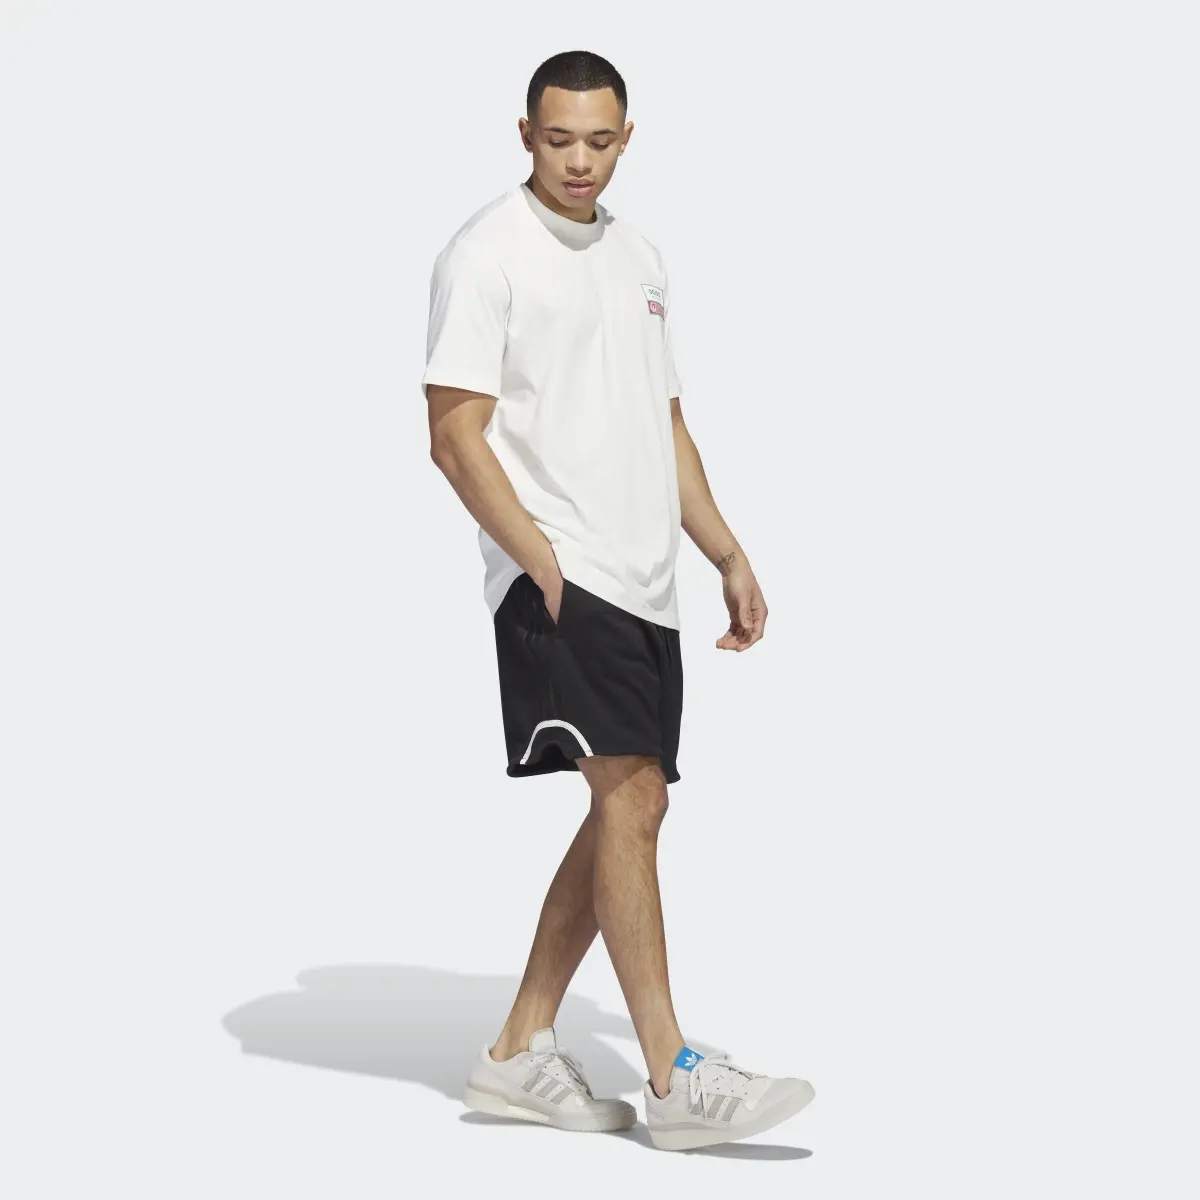 Adidas Basketball Mesh Shorts. 3